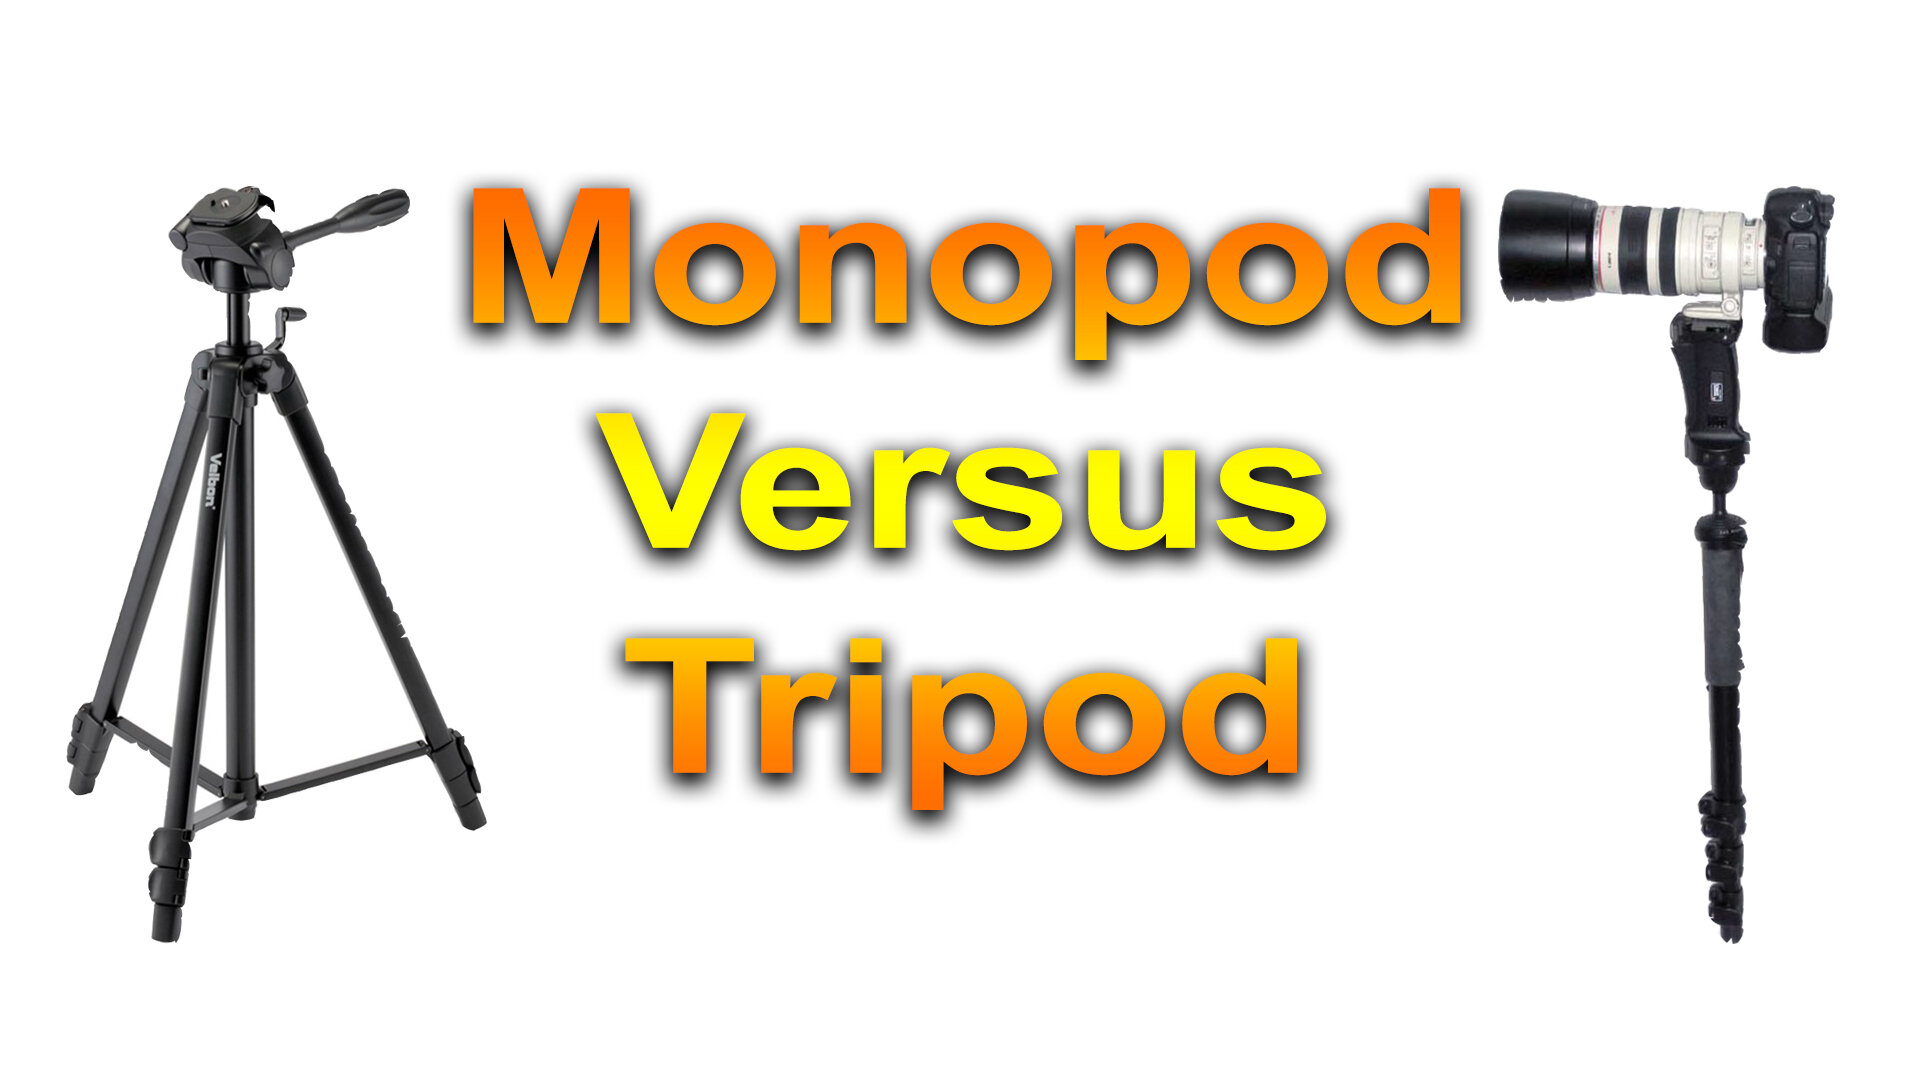 Monopod vs Tripod – which is better?